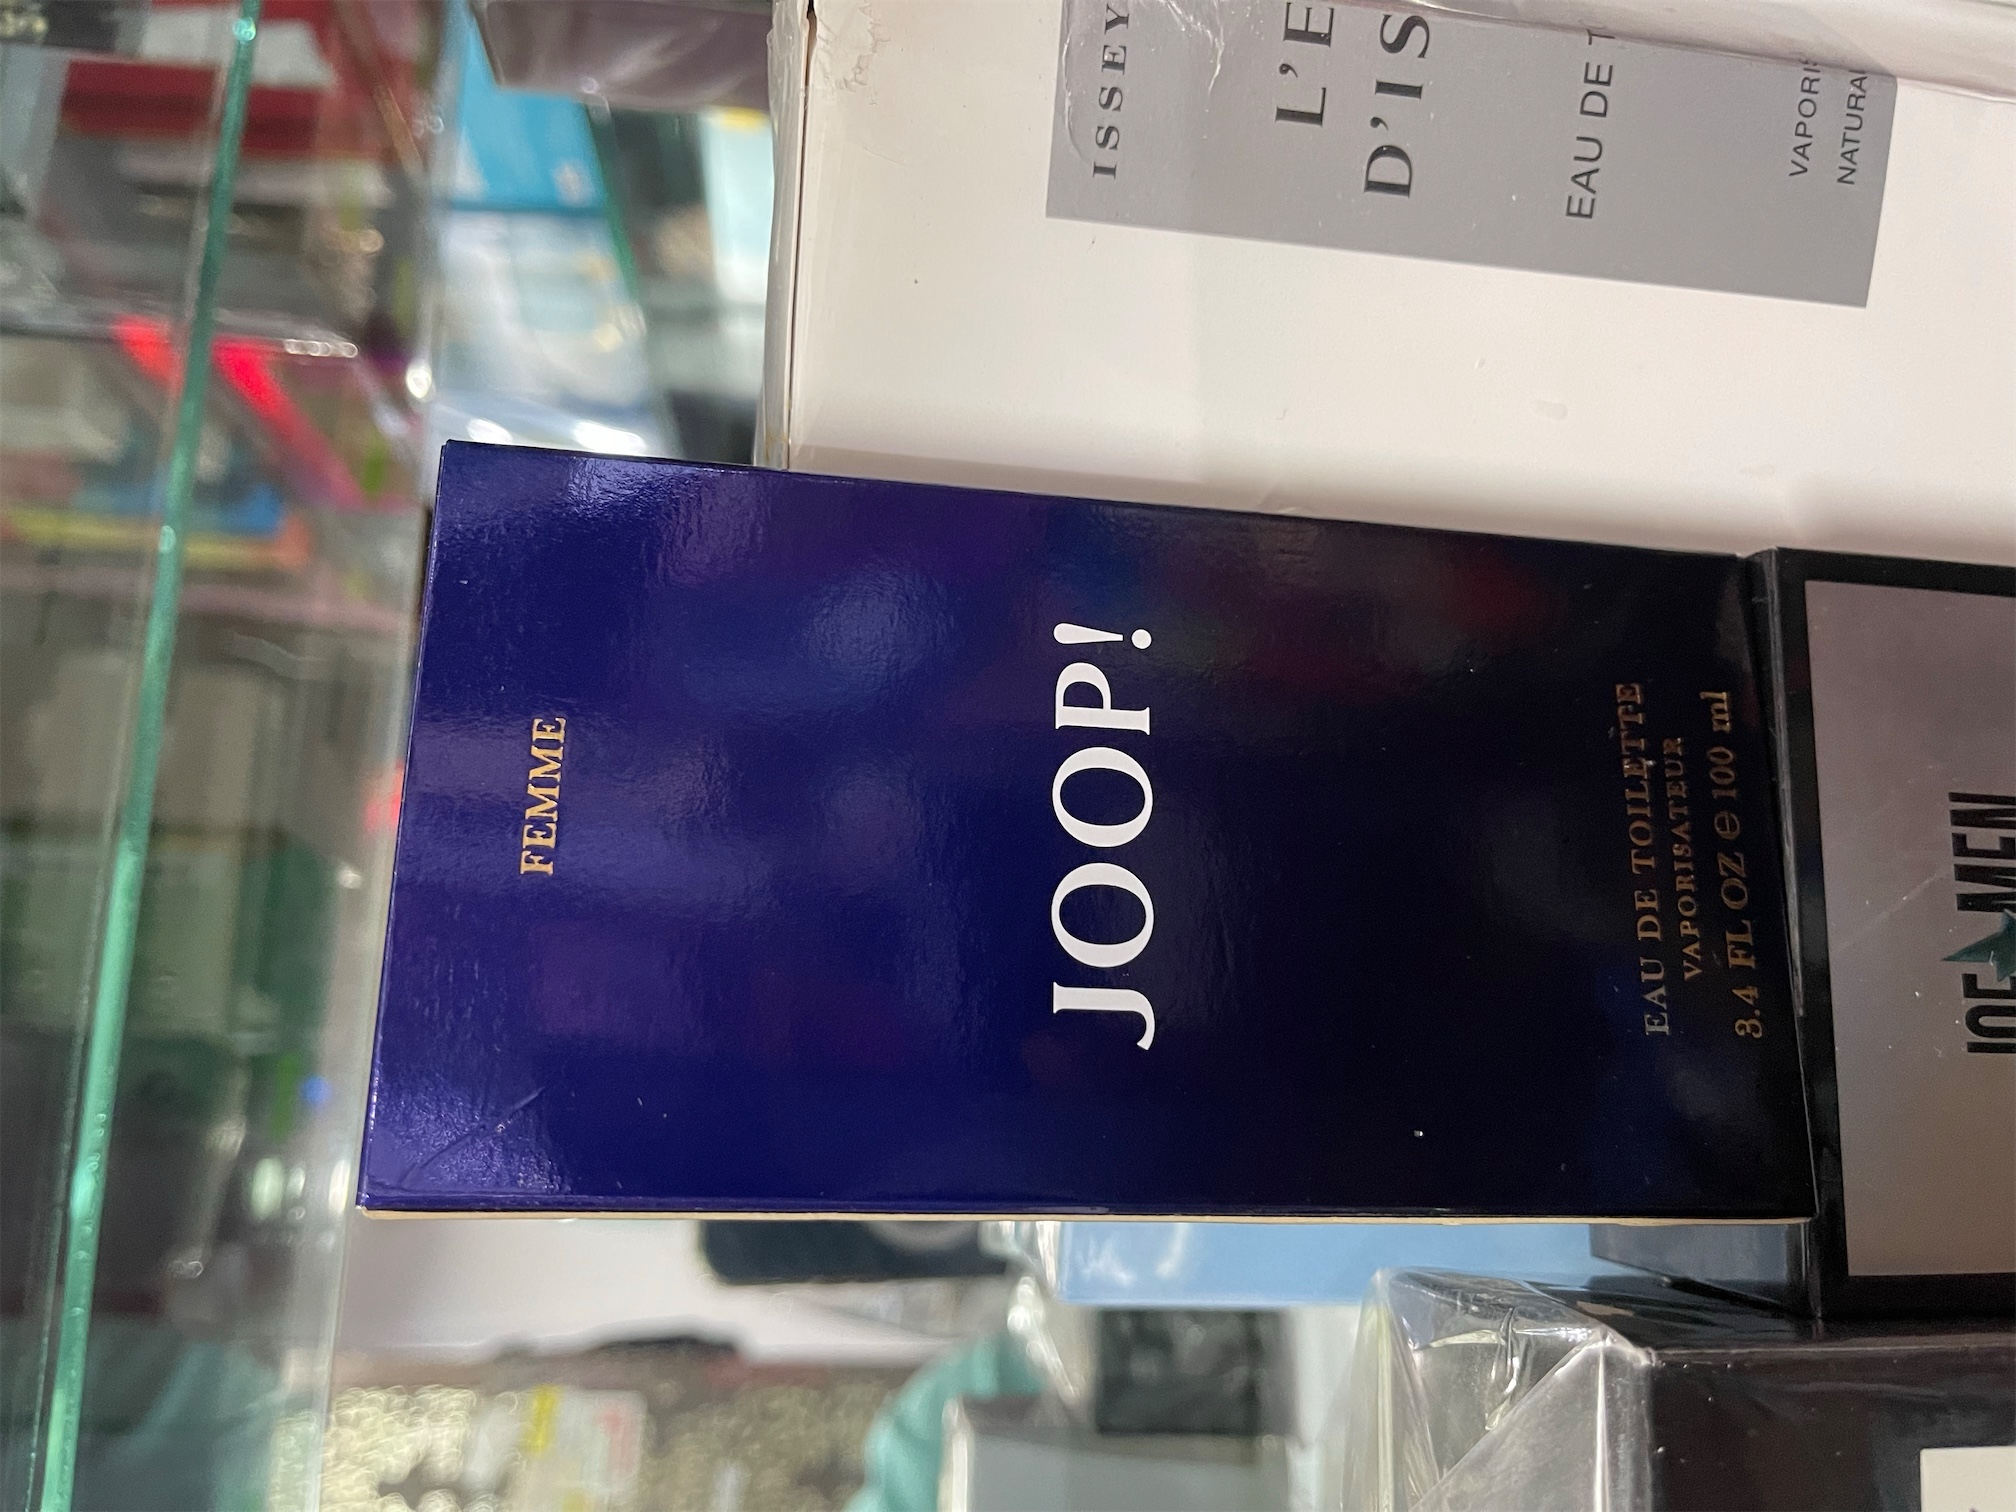 salud y belleza - Perfume Joop Mujer. Original. AL POR MAYOR Y AL DETALLE